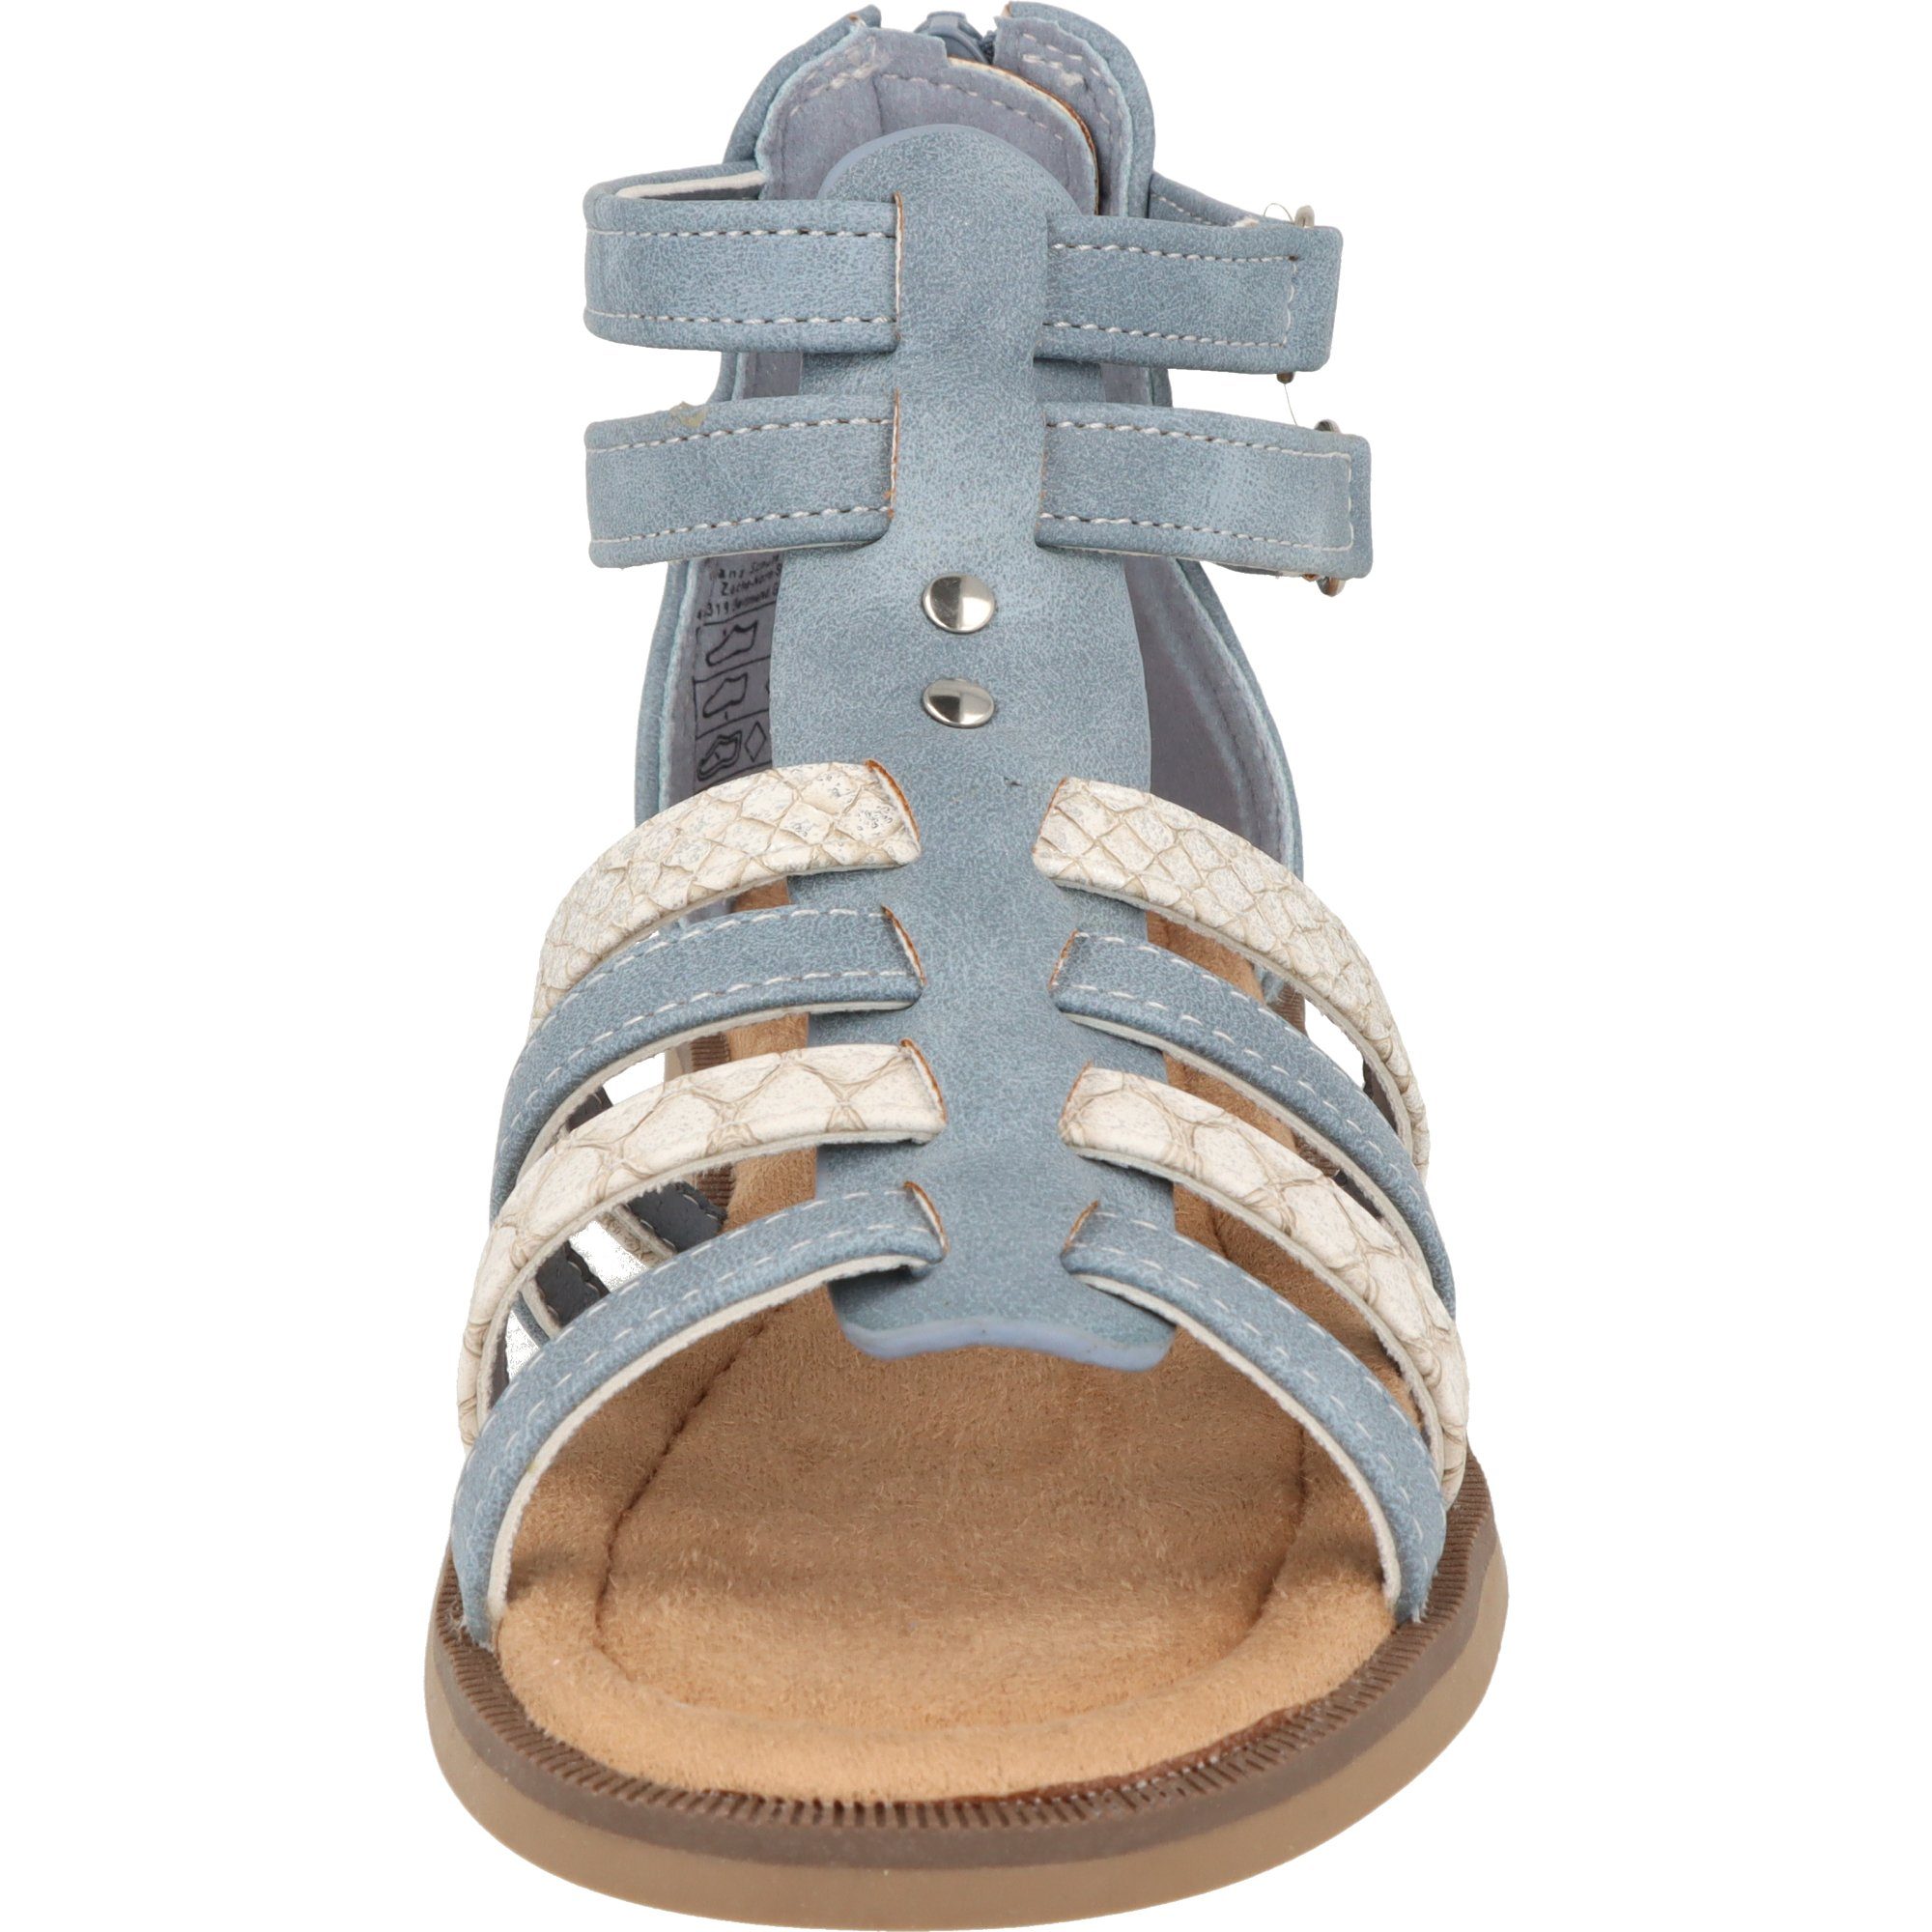 Sommer Schuhe 482-371 Sandale Blau Mädchen Klett Indigo Freizeit Römersandale Kinder